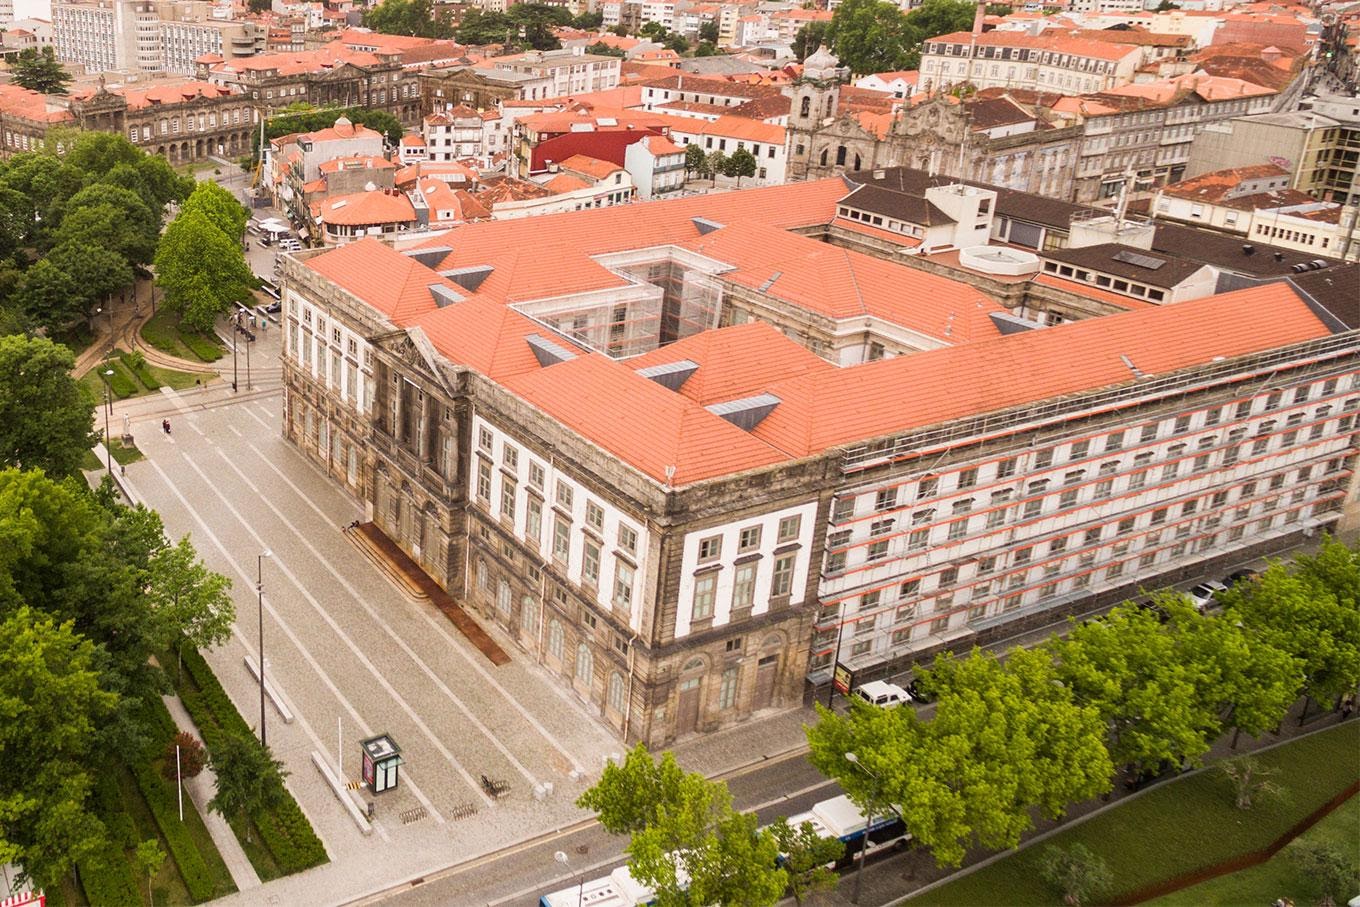 /pt/noticia/post/universidade-do-porto-conheca-uma-das-mais-importantes-instituicoes-de-portugal